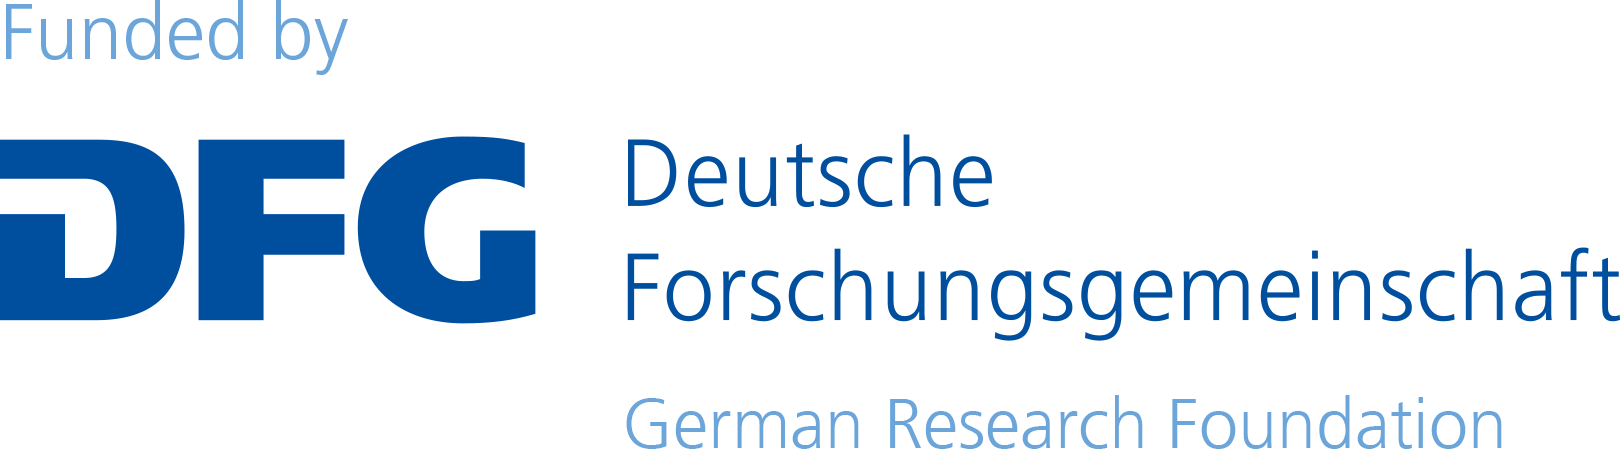 Logo of the German Research Foundation (Deutsche Forschungsgesellschaft).